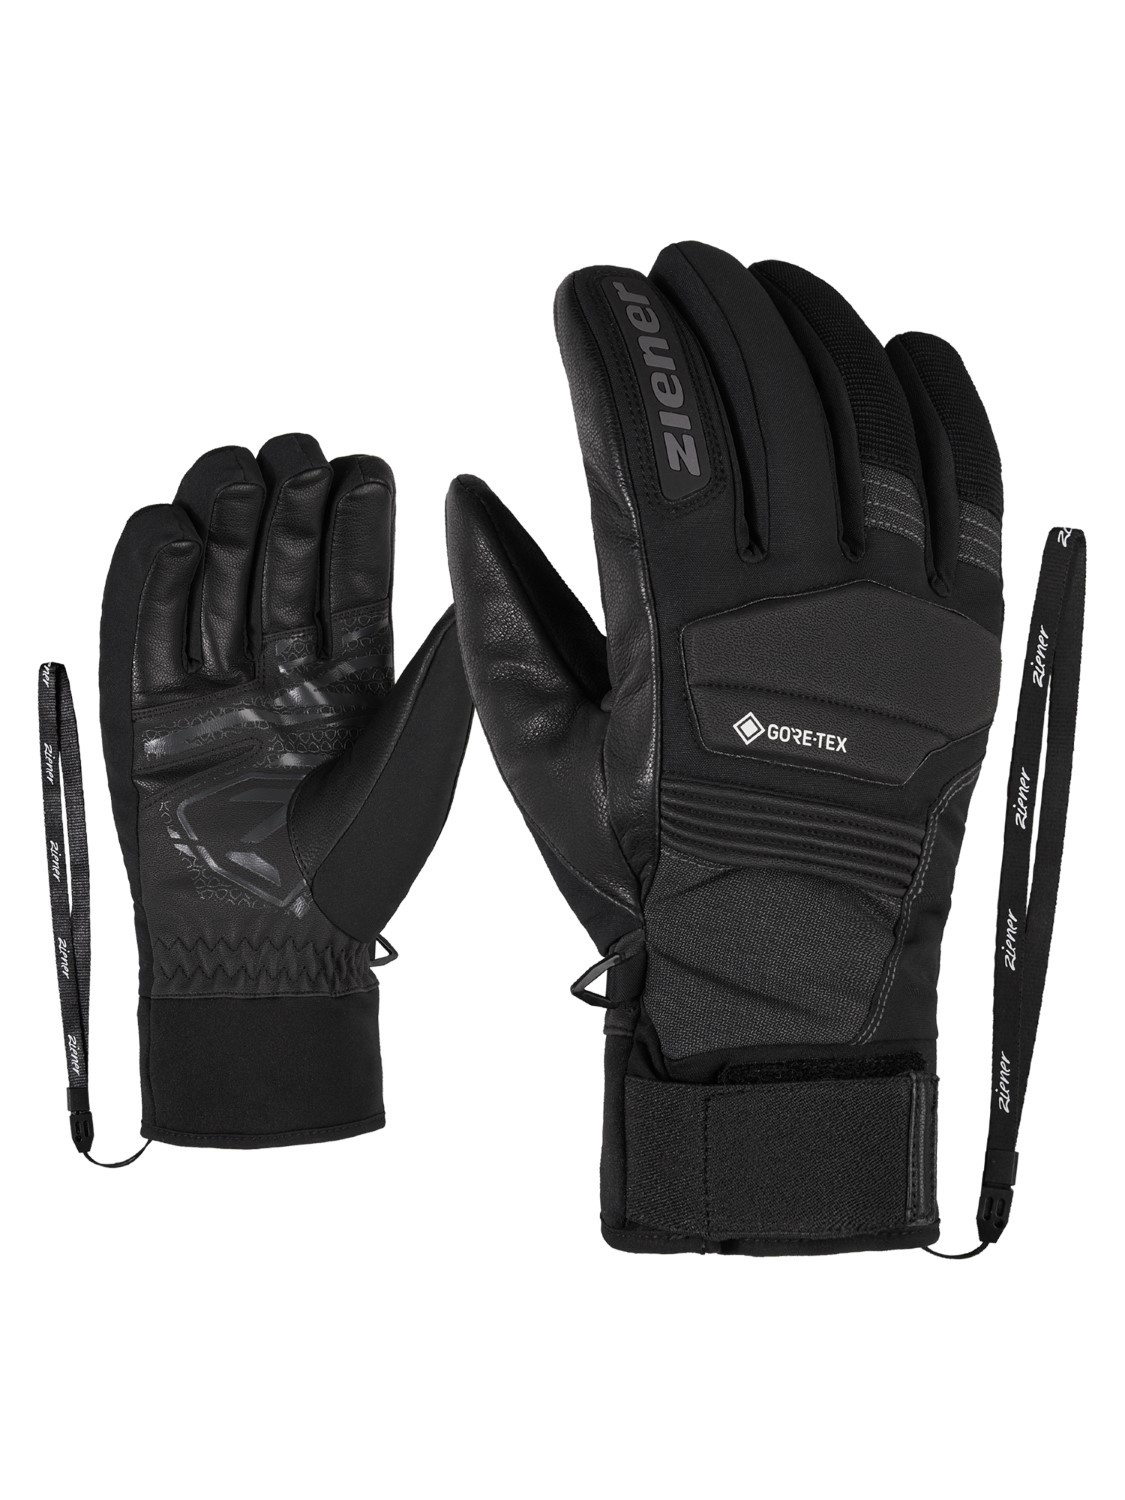 Ziener Merfy Junior Glove SB Gants de Snowboard/Sports d'hiver Femme 